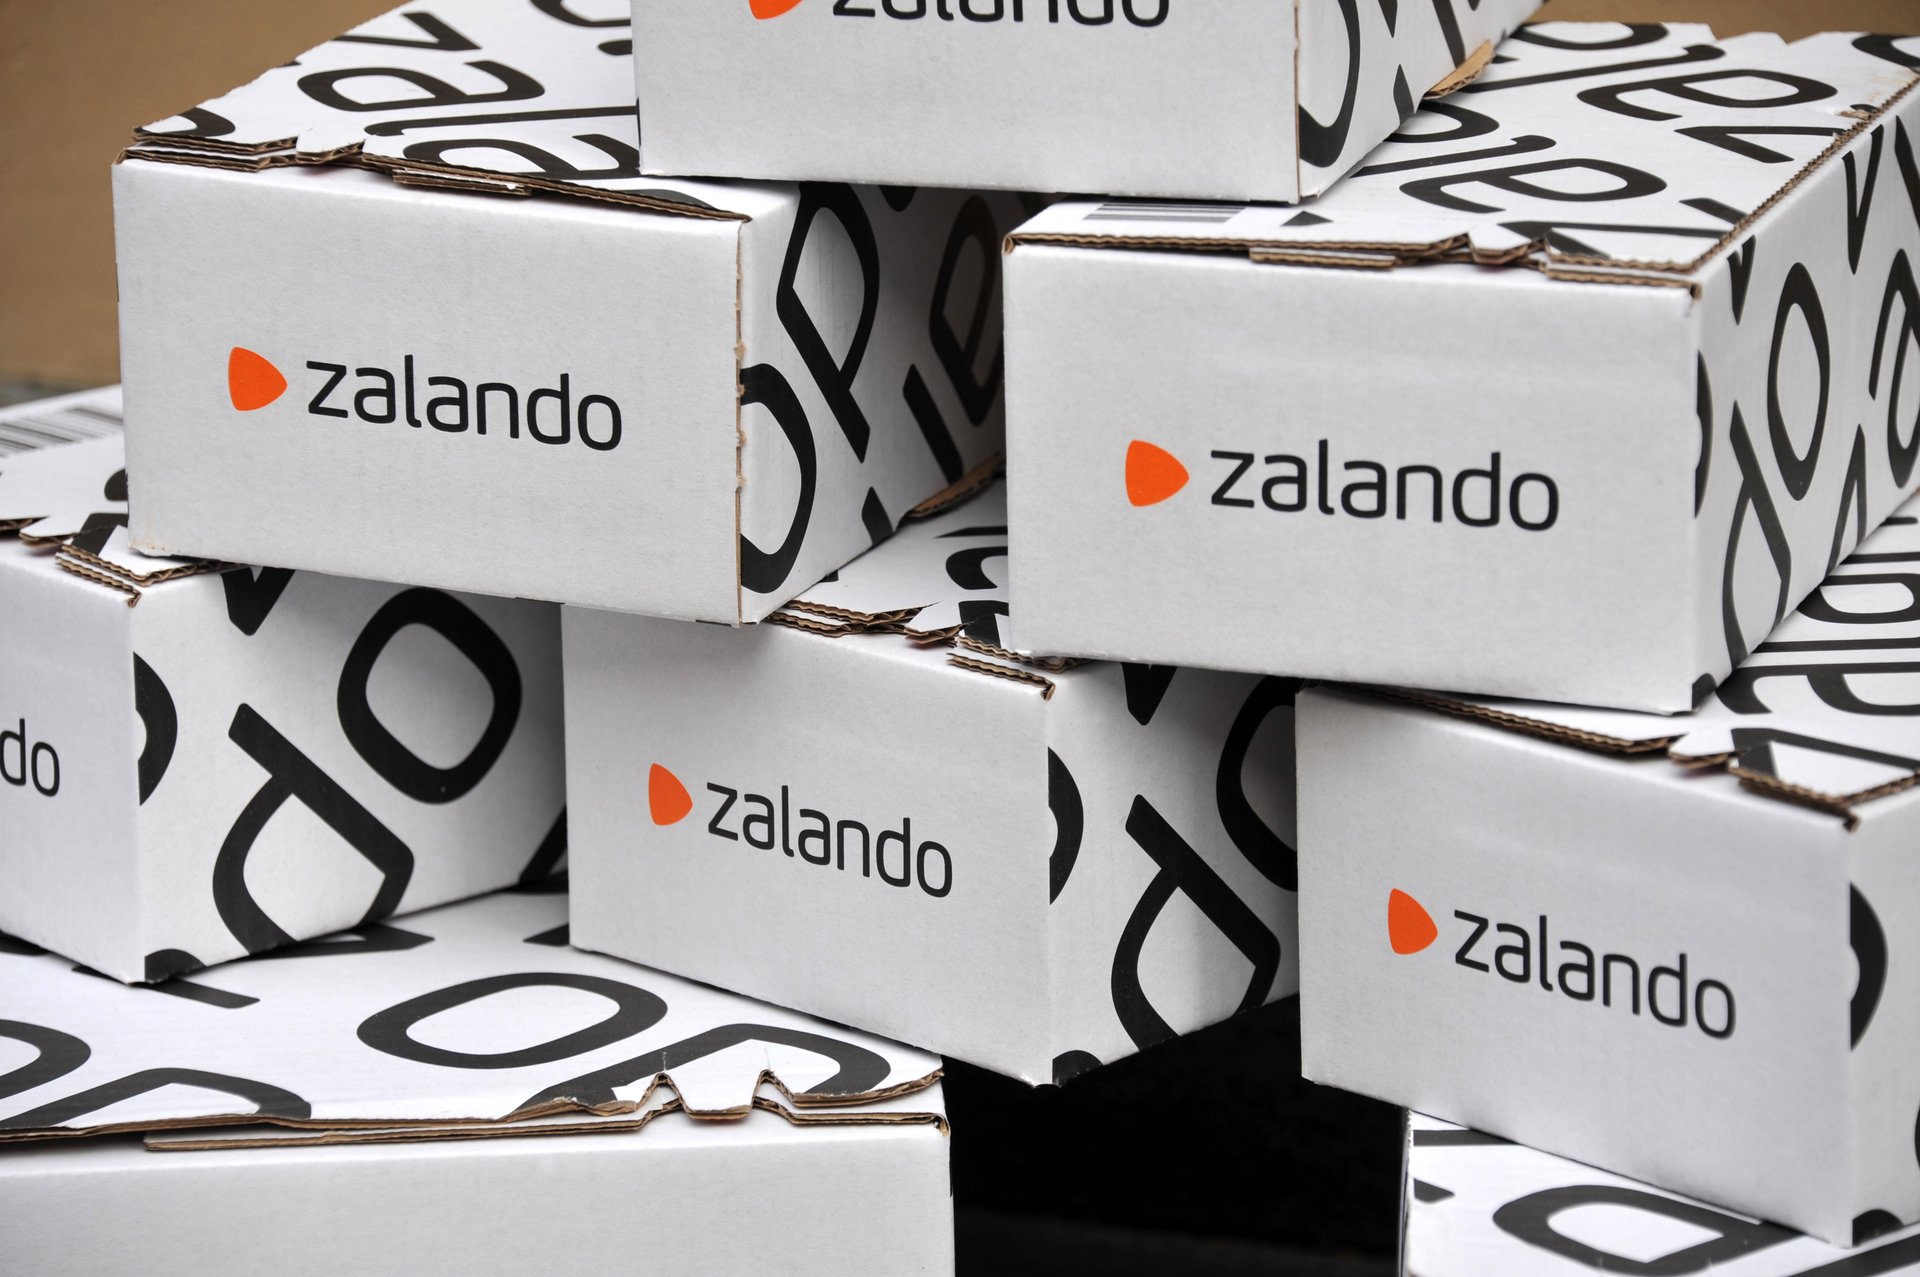 Stack of Zalando branded cardboard boxes.